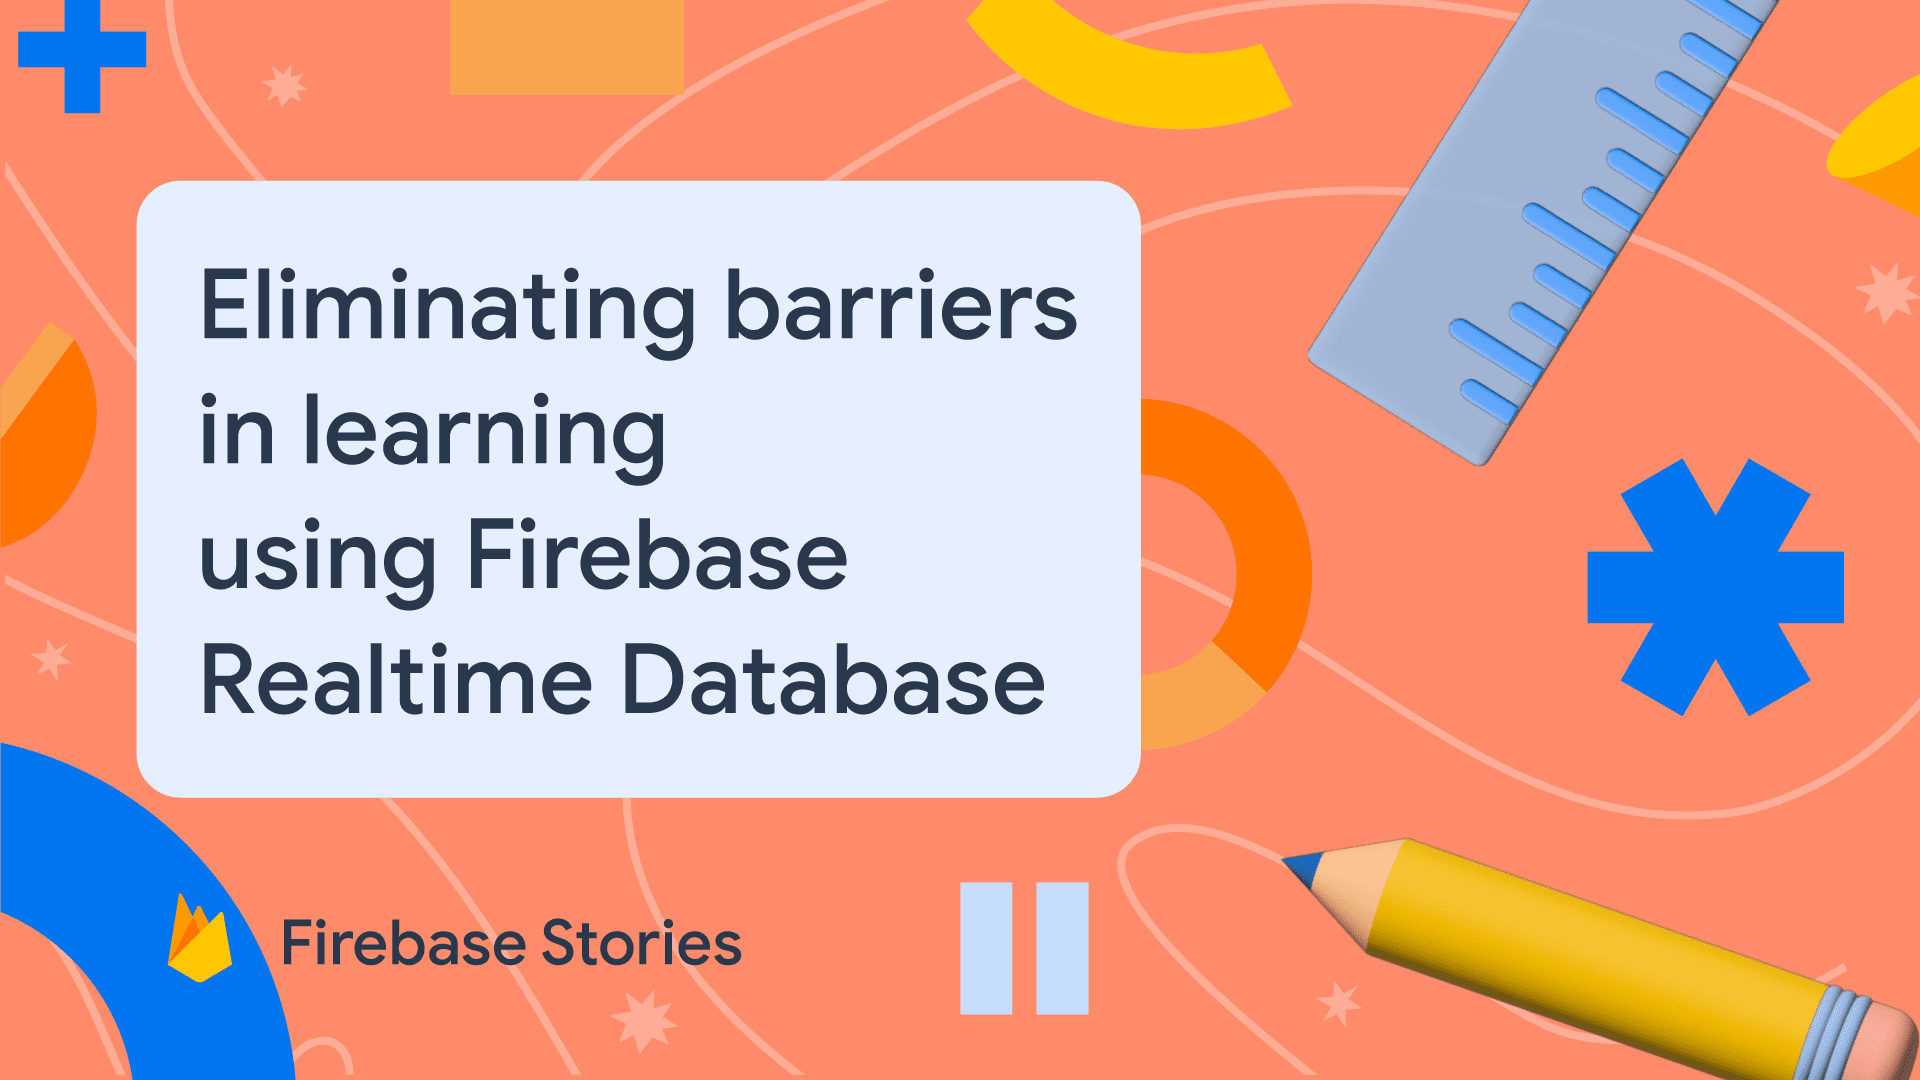 Classkick quita los obstáculos del aprendizaje con Firebase Realtime Database
